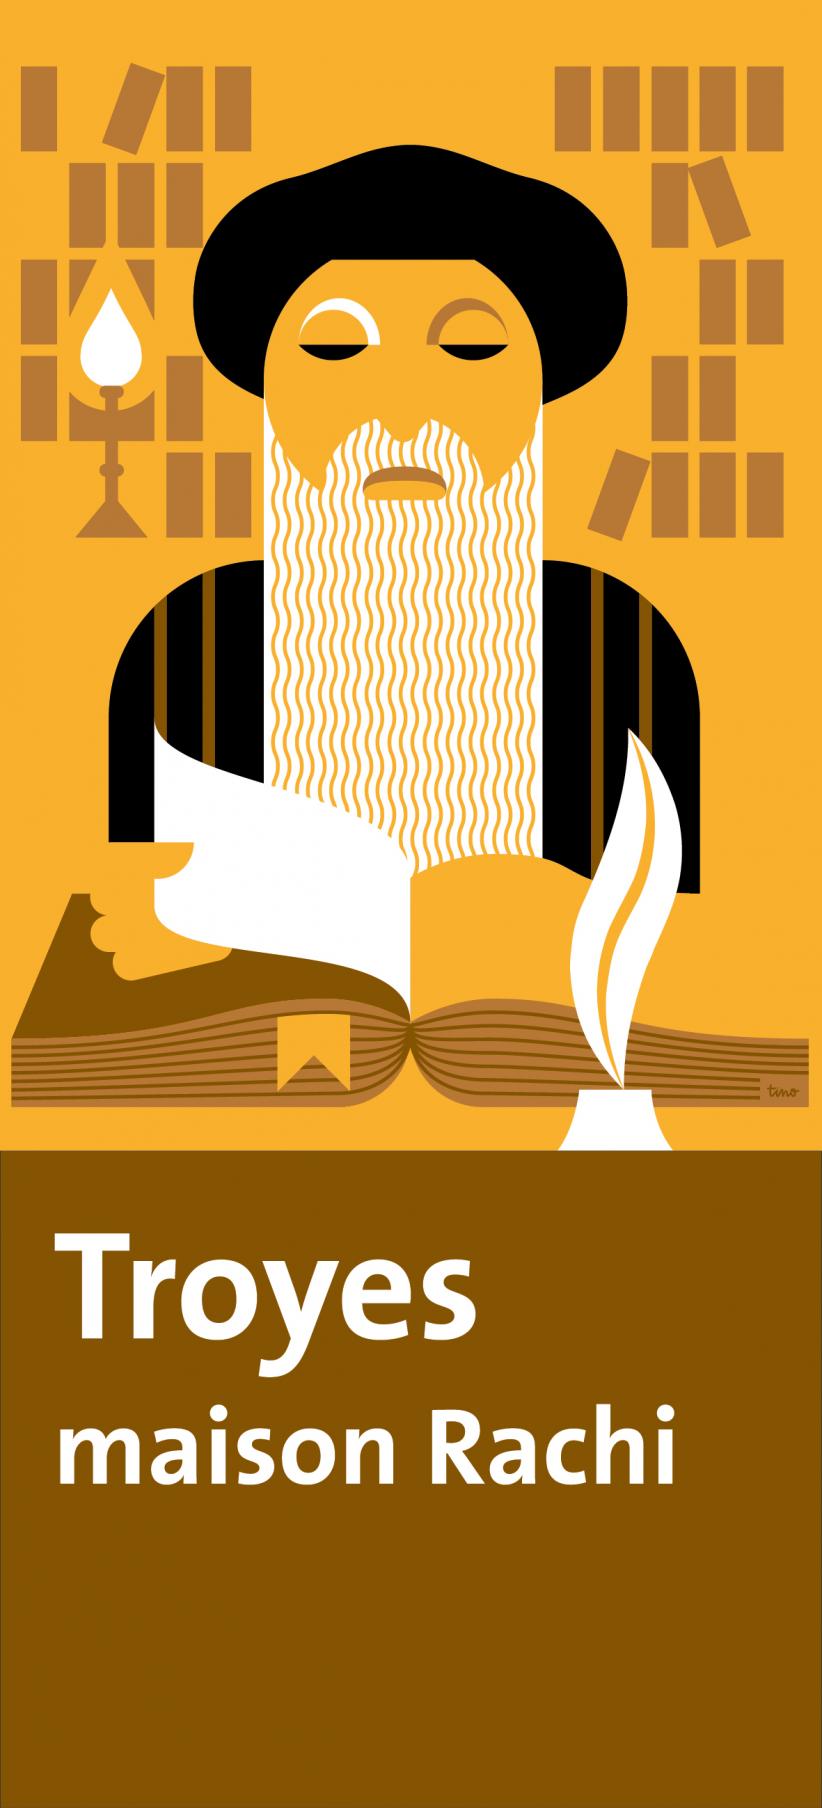 Panneau touristique pour Troyes